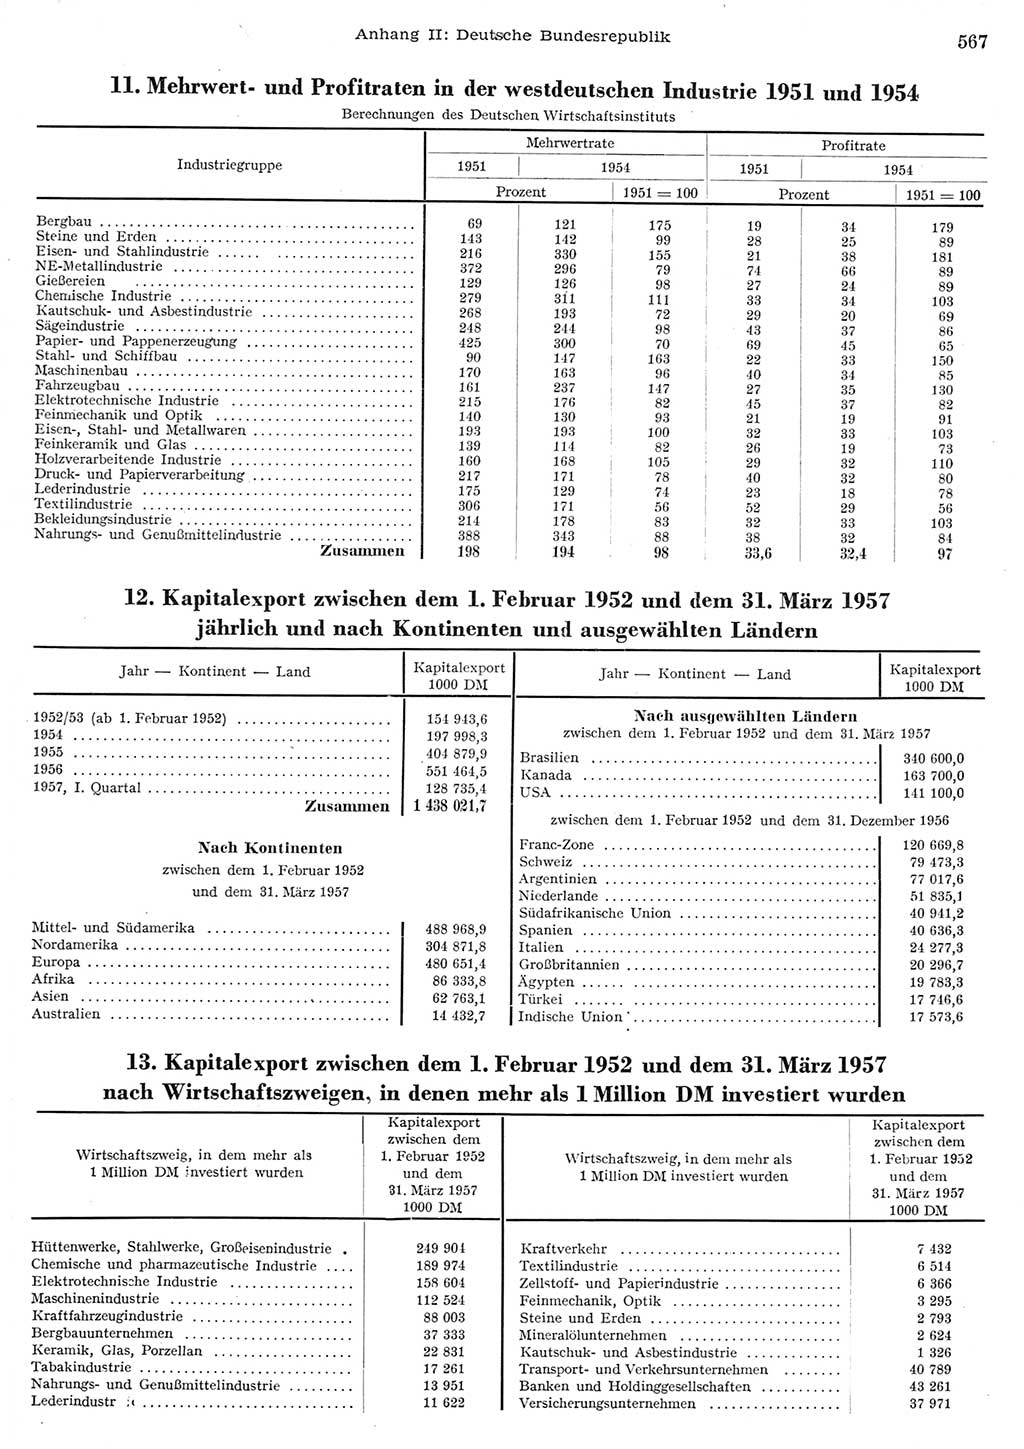 Statistisches Jahrbuch der Deutschen Demokratischen Republik (DDR) 1956, Seite 567 (Stat. Jb. DDR 1956, S. 567)